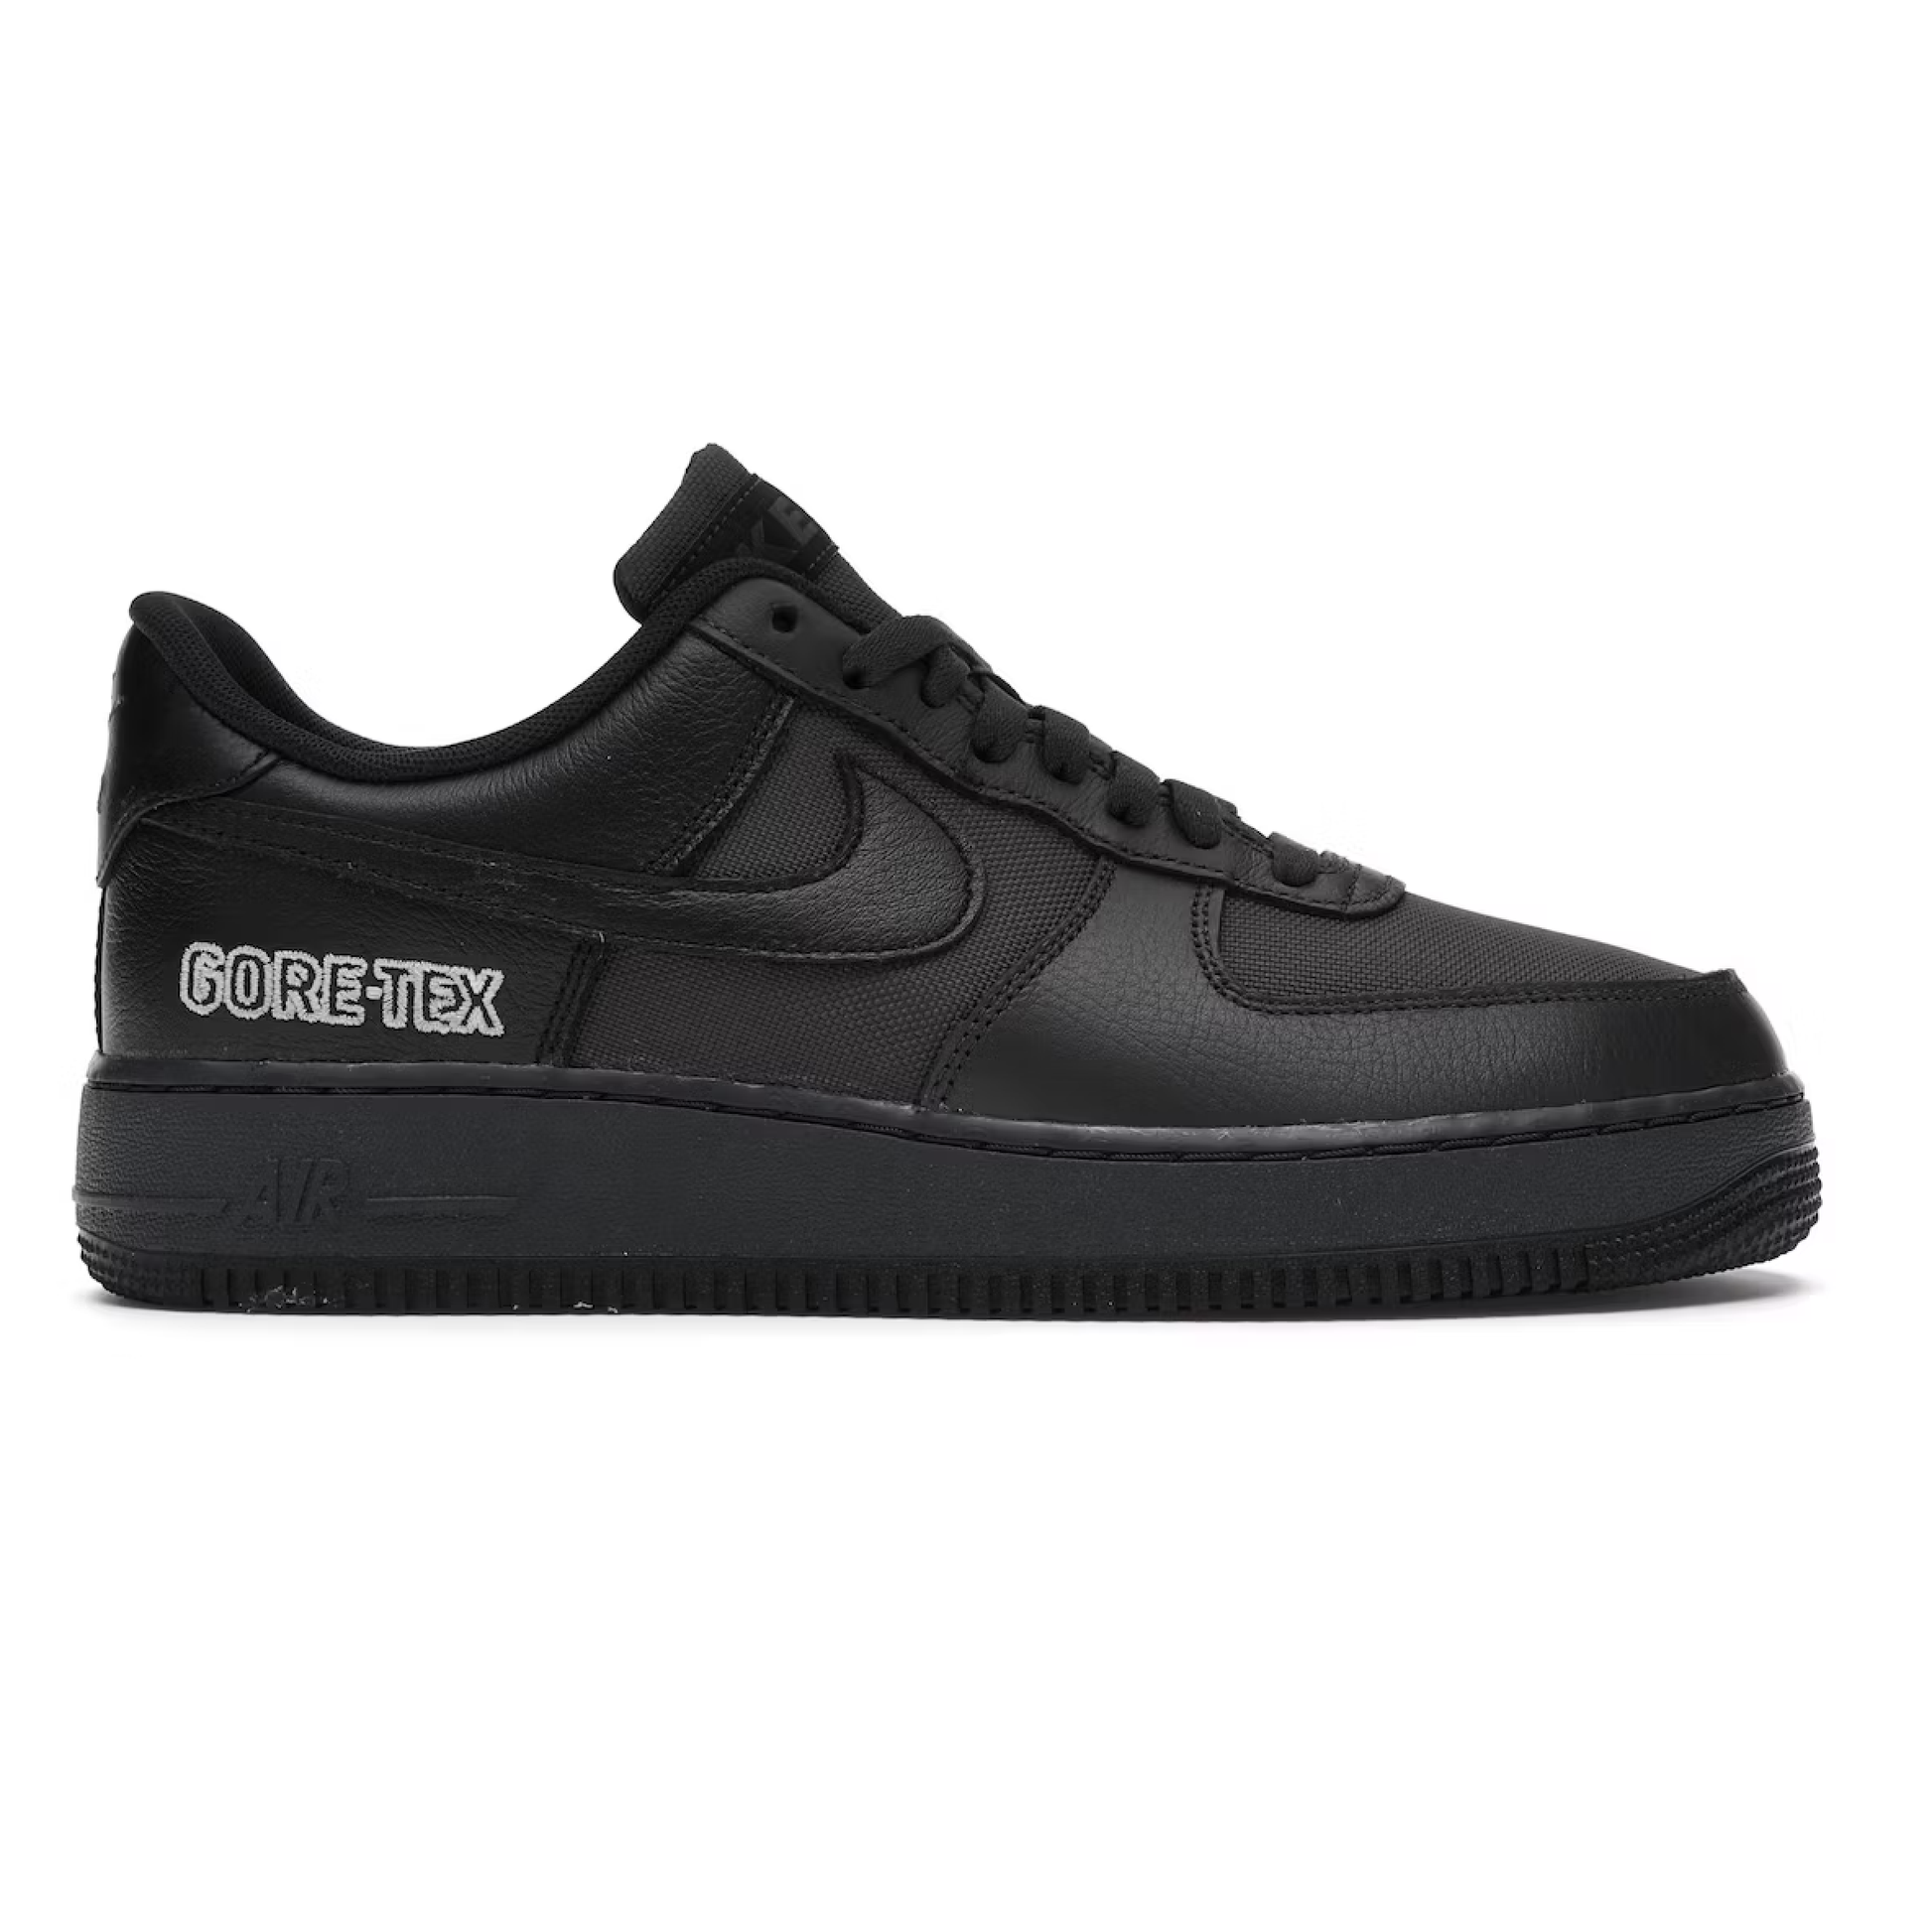 Nike Mens Air Force 1 Low Gore-Tex CT2858 001 Black